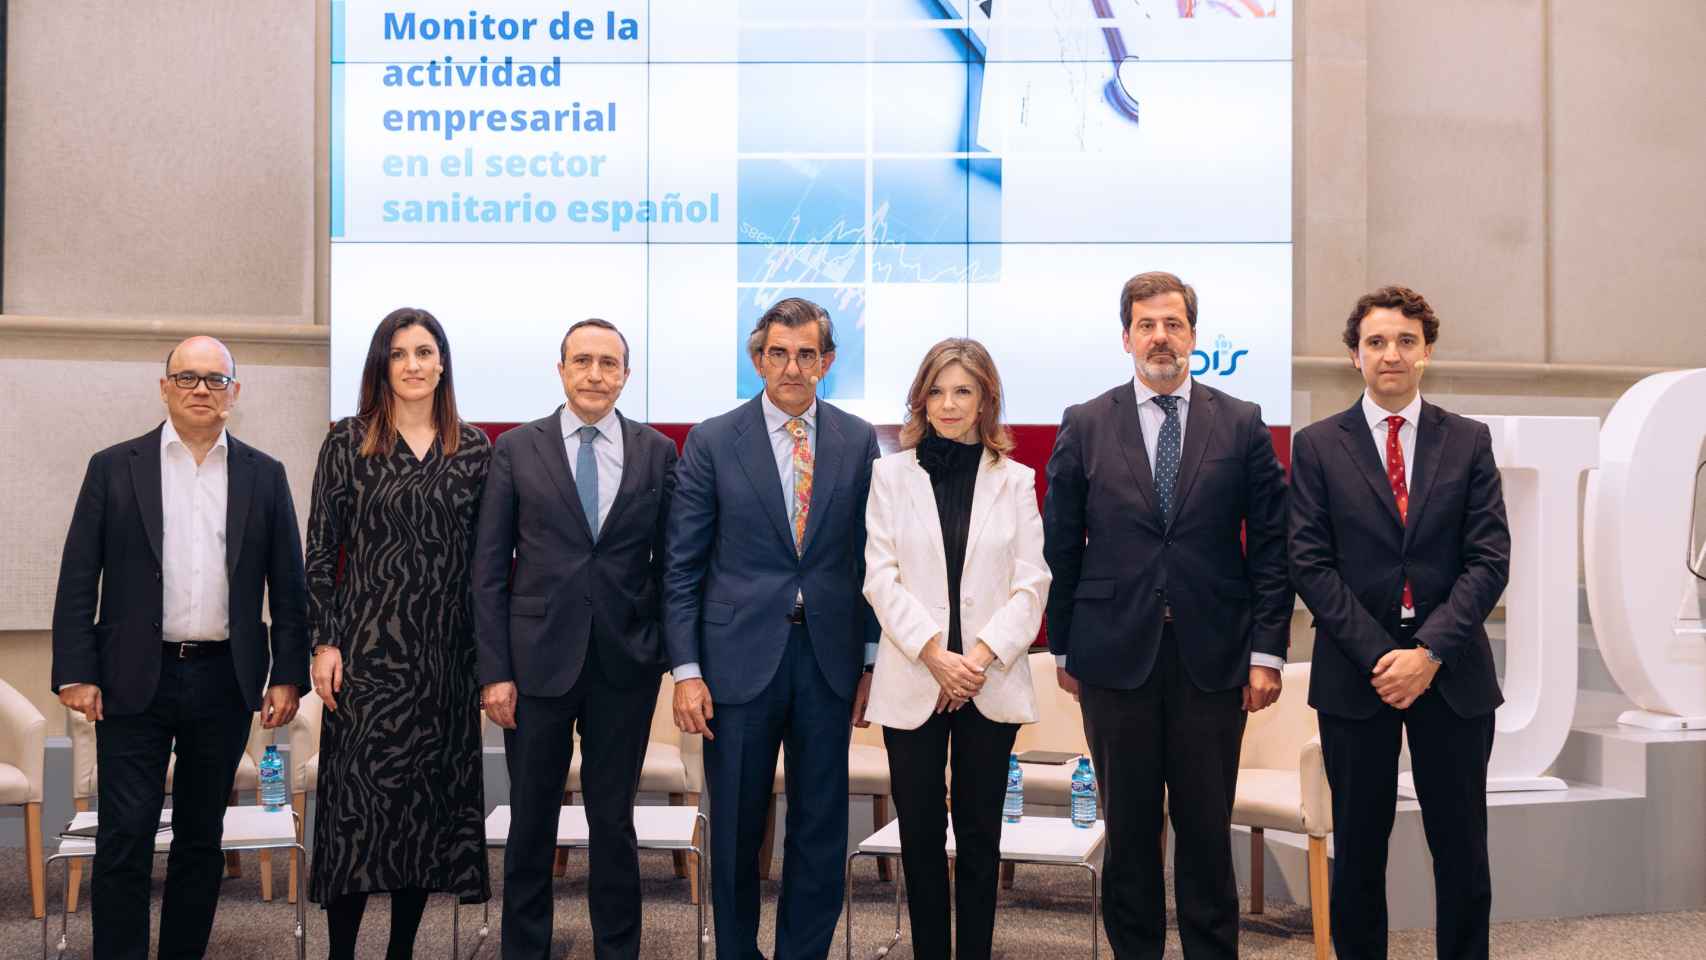 Foto de familia de la presentación del informe Monitor de la actividad empresarial en el sector sanitario español.